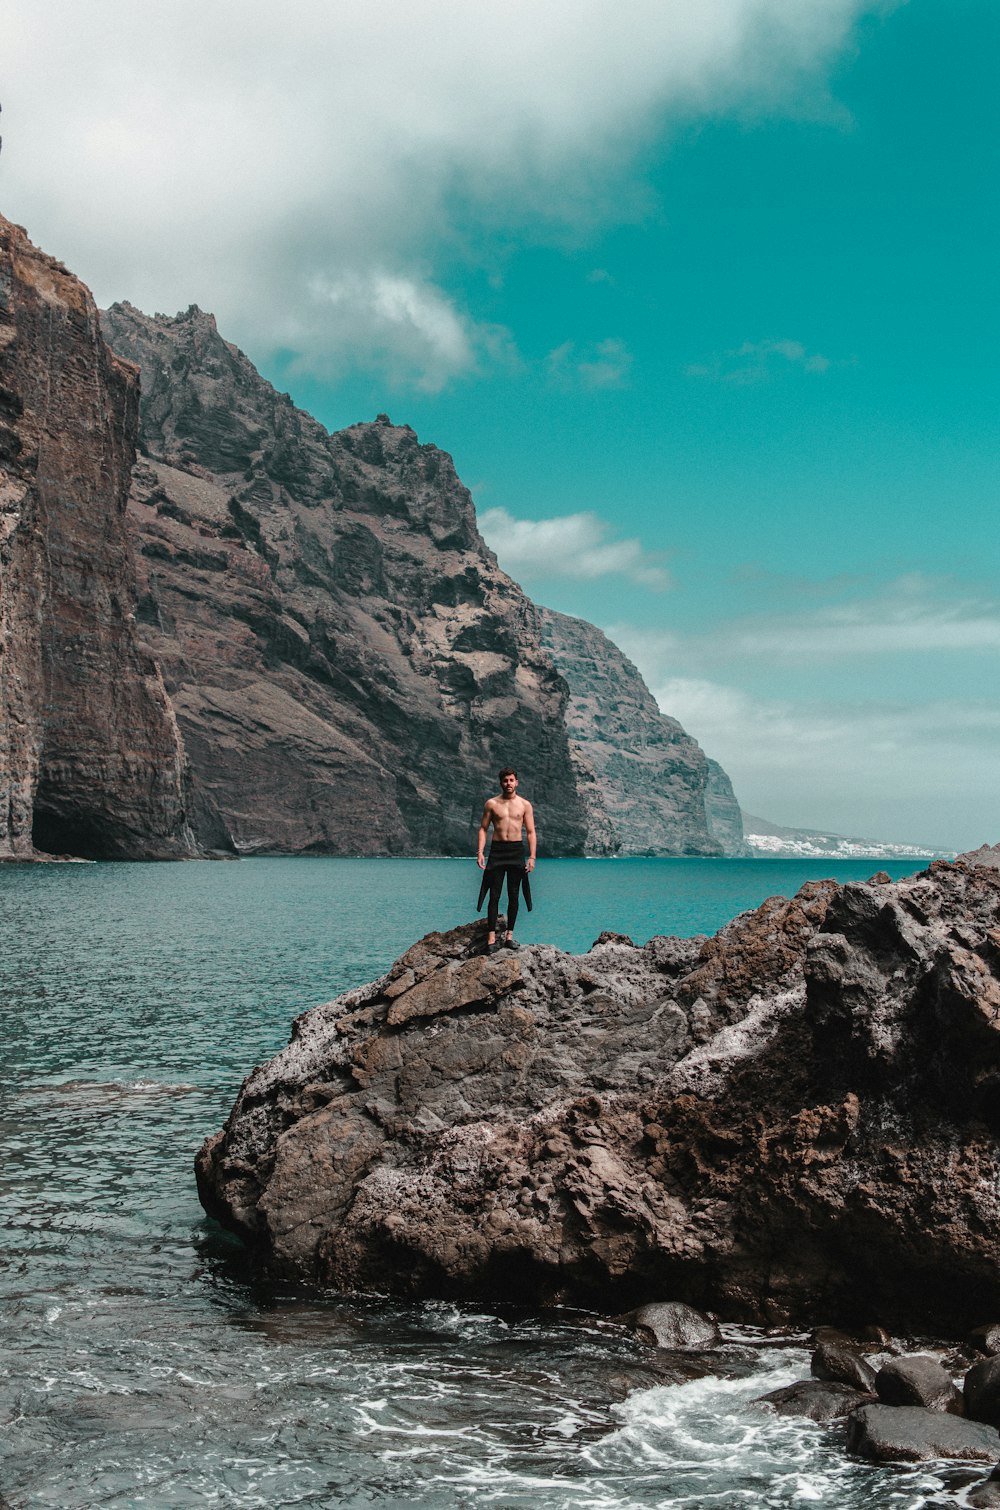 Oben-ohne-Mann, der tagsüber auf einer Felsformation in der Nähe des Ozeans steht